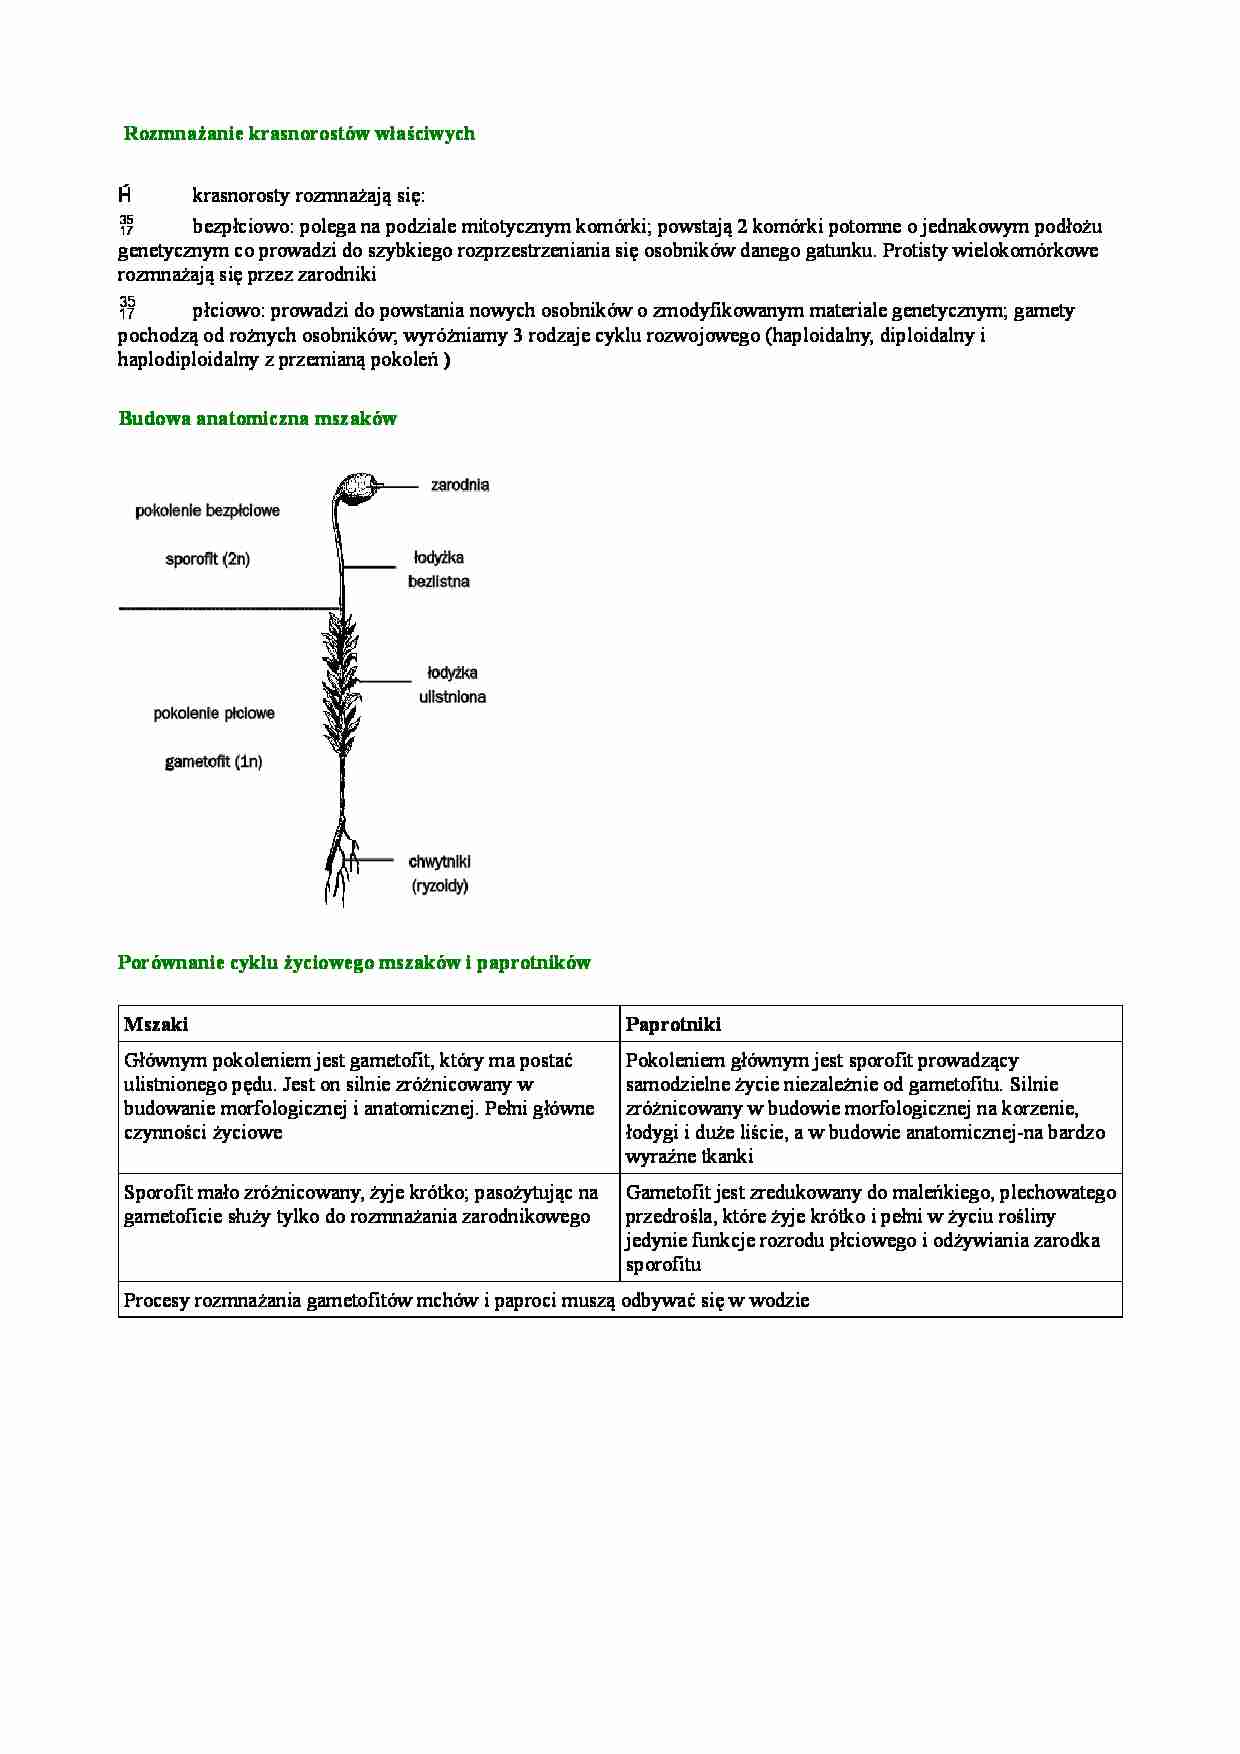 Rozmnażanie krasnorostów właściwych, budowa anatomiczna mszaków i porównanie cyklu życiowego mszaków i paprotników - strona 1